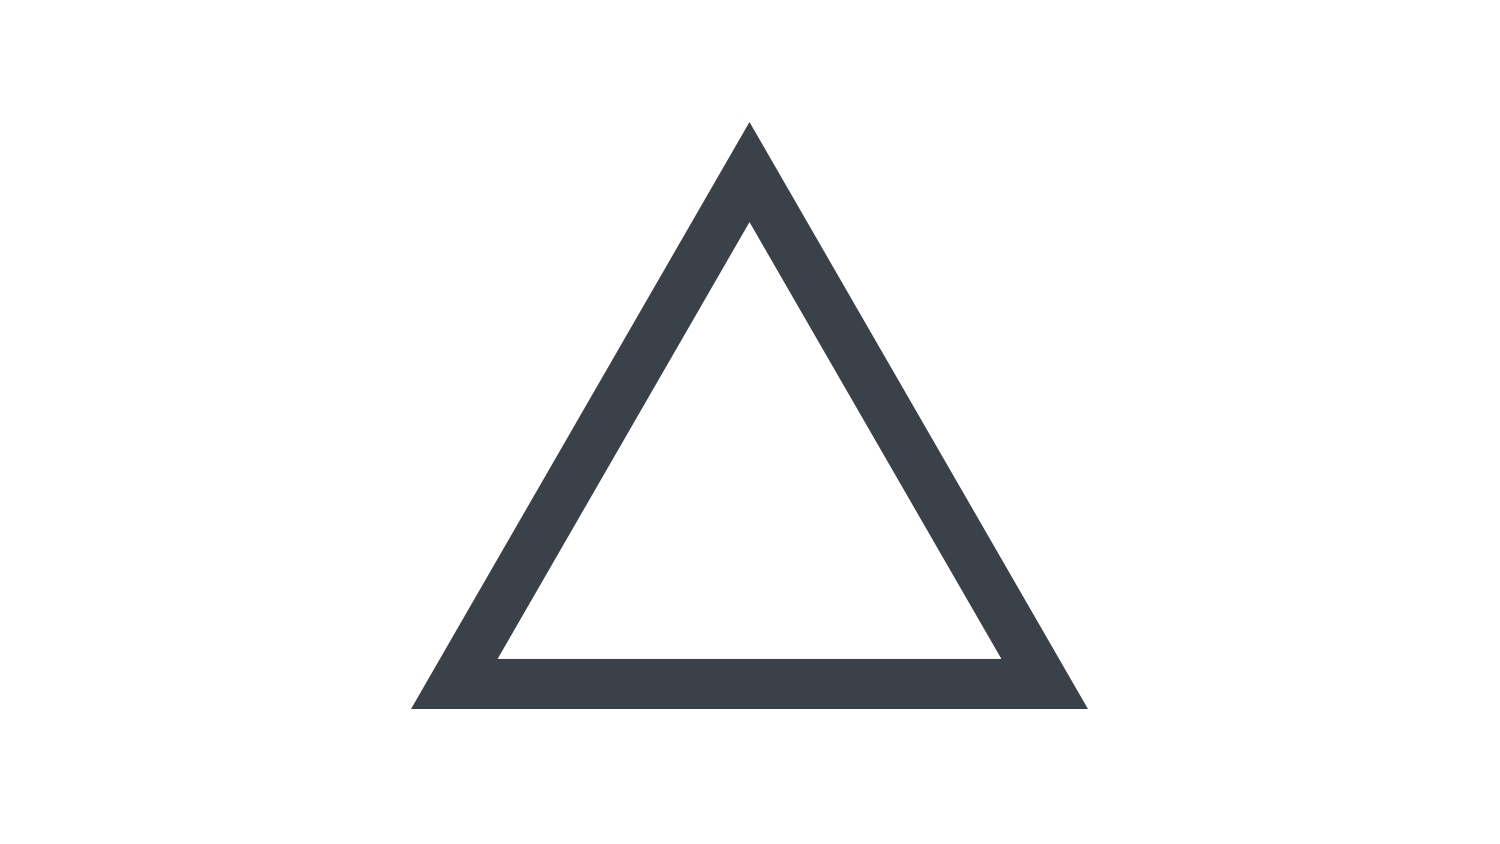 2-11　|　三角形の描き方
